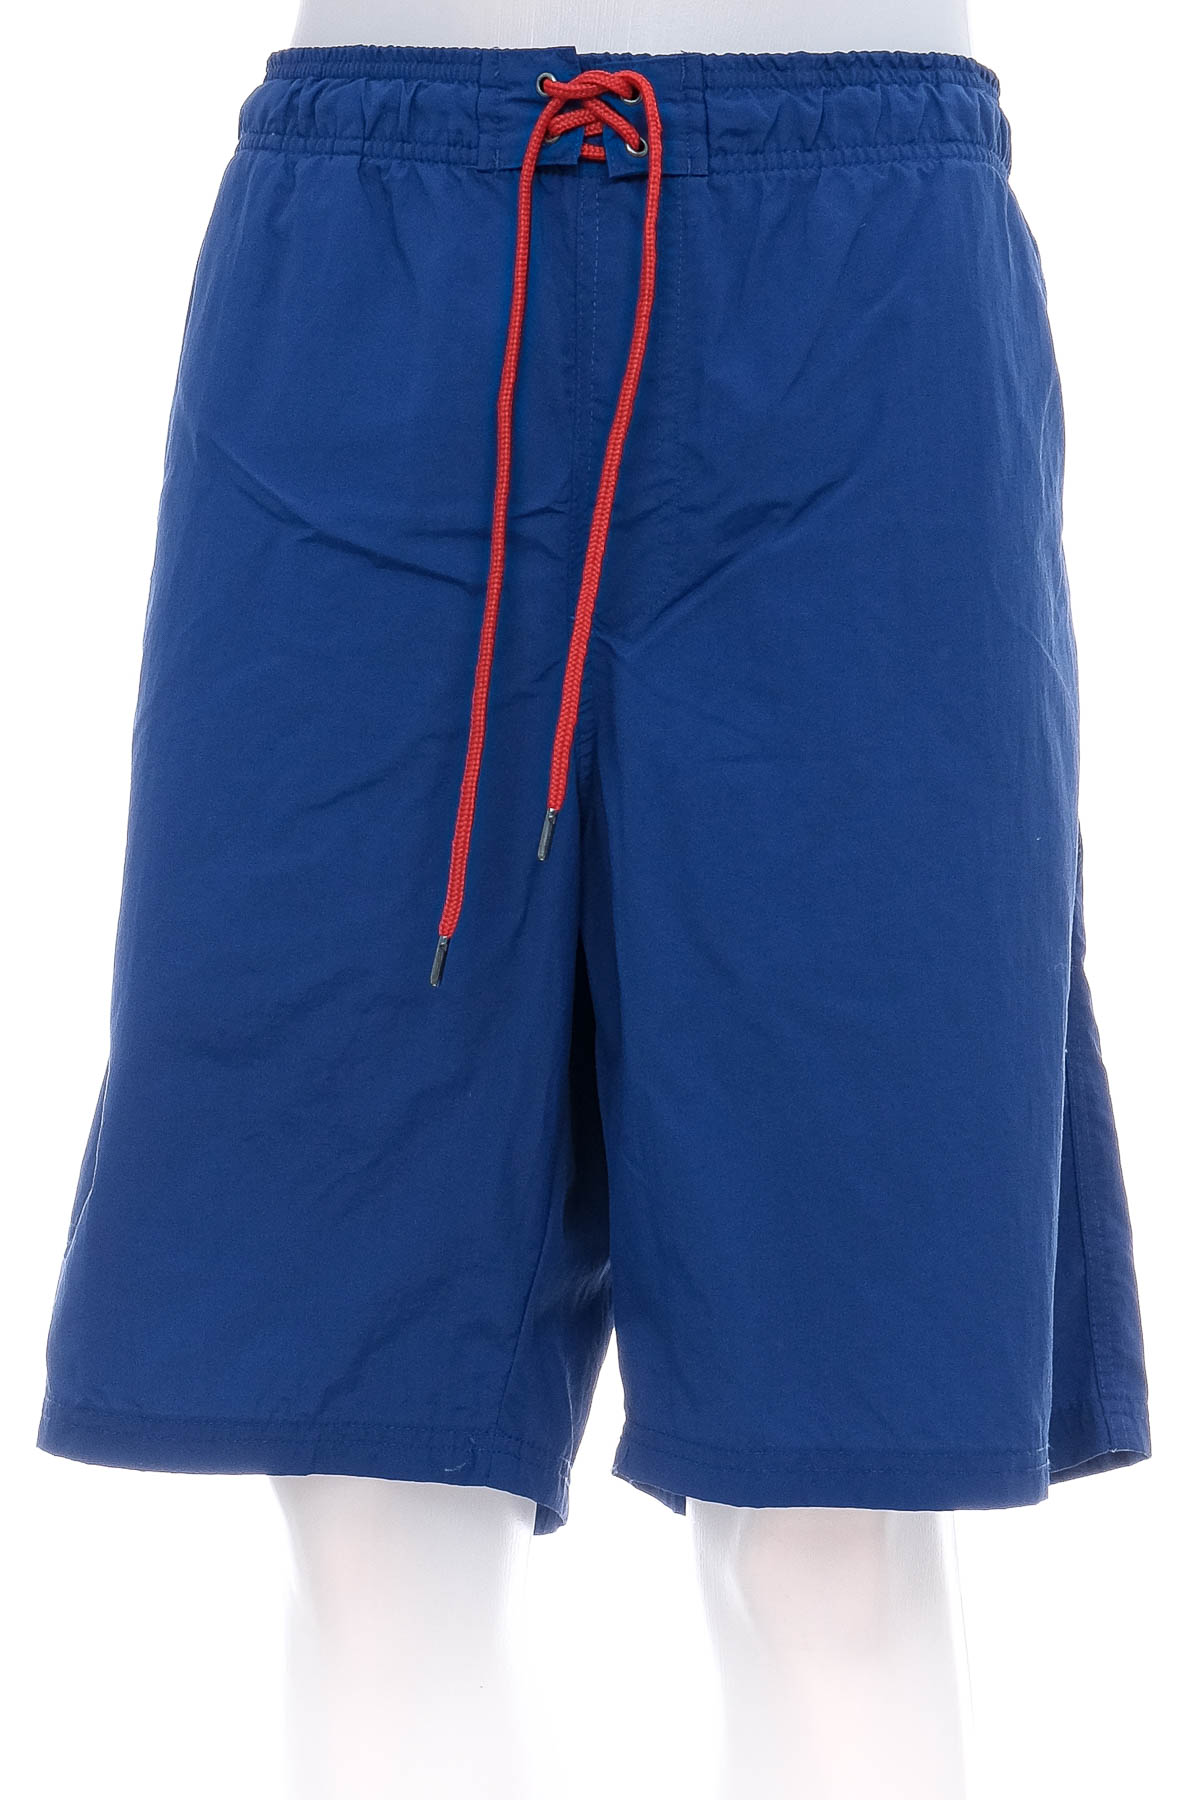 Men's shorts - Watsons - 0